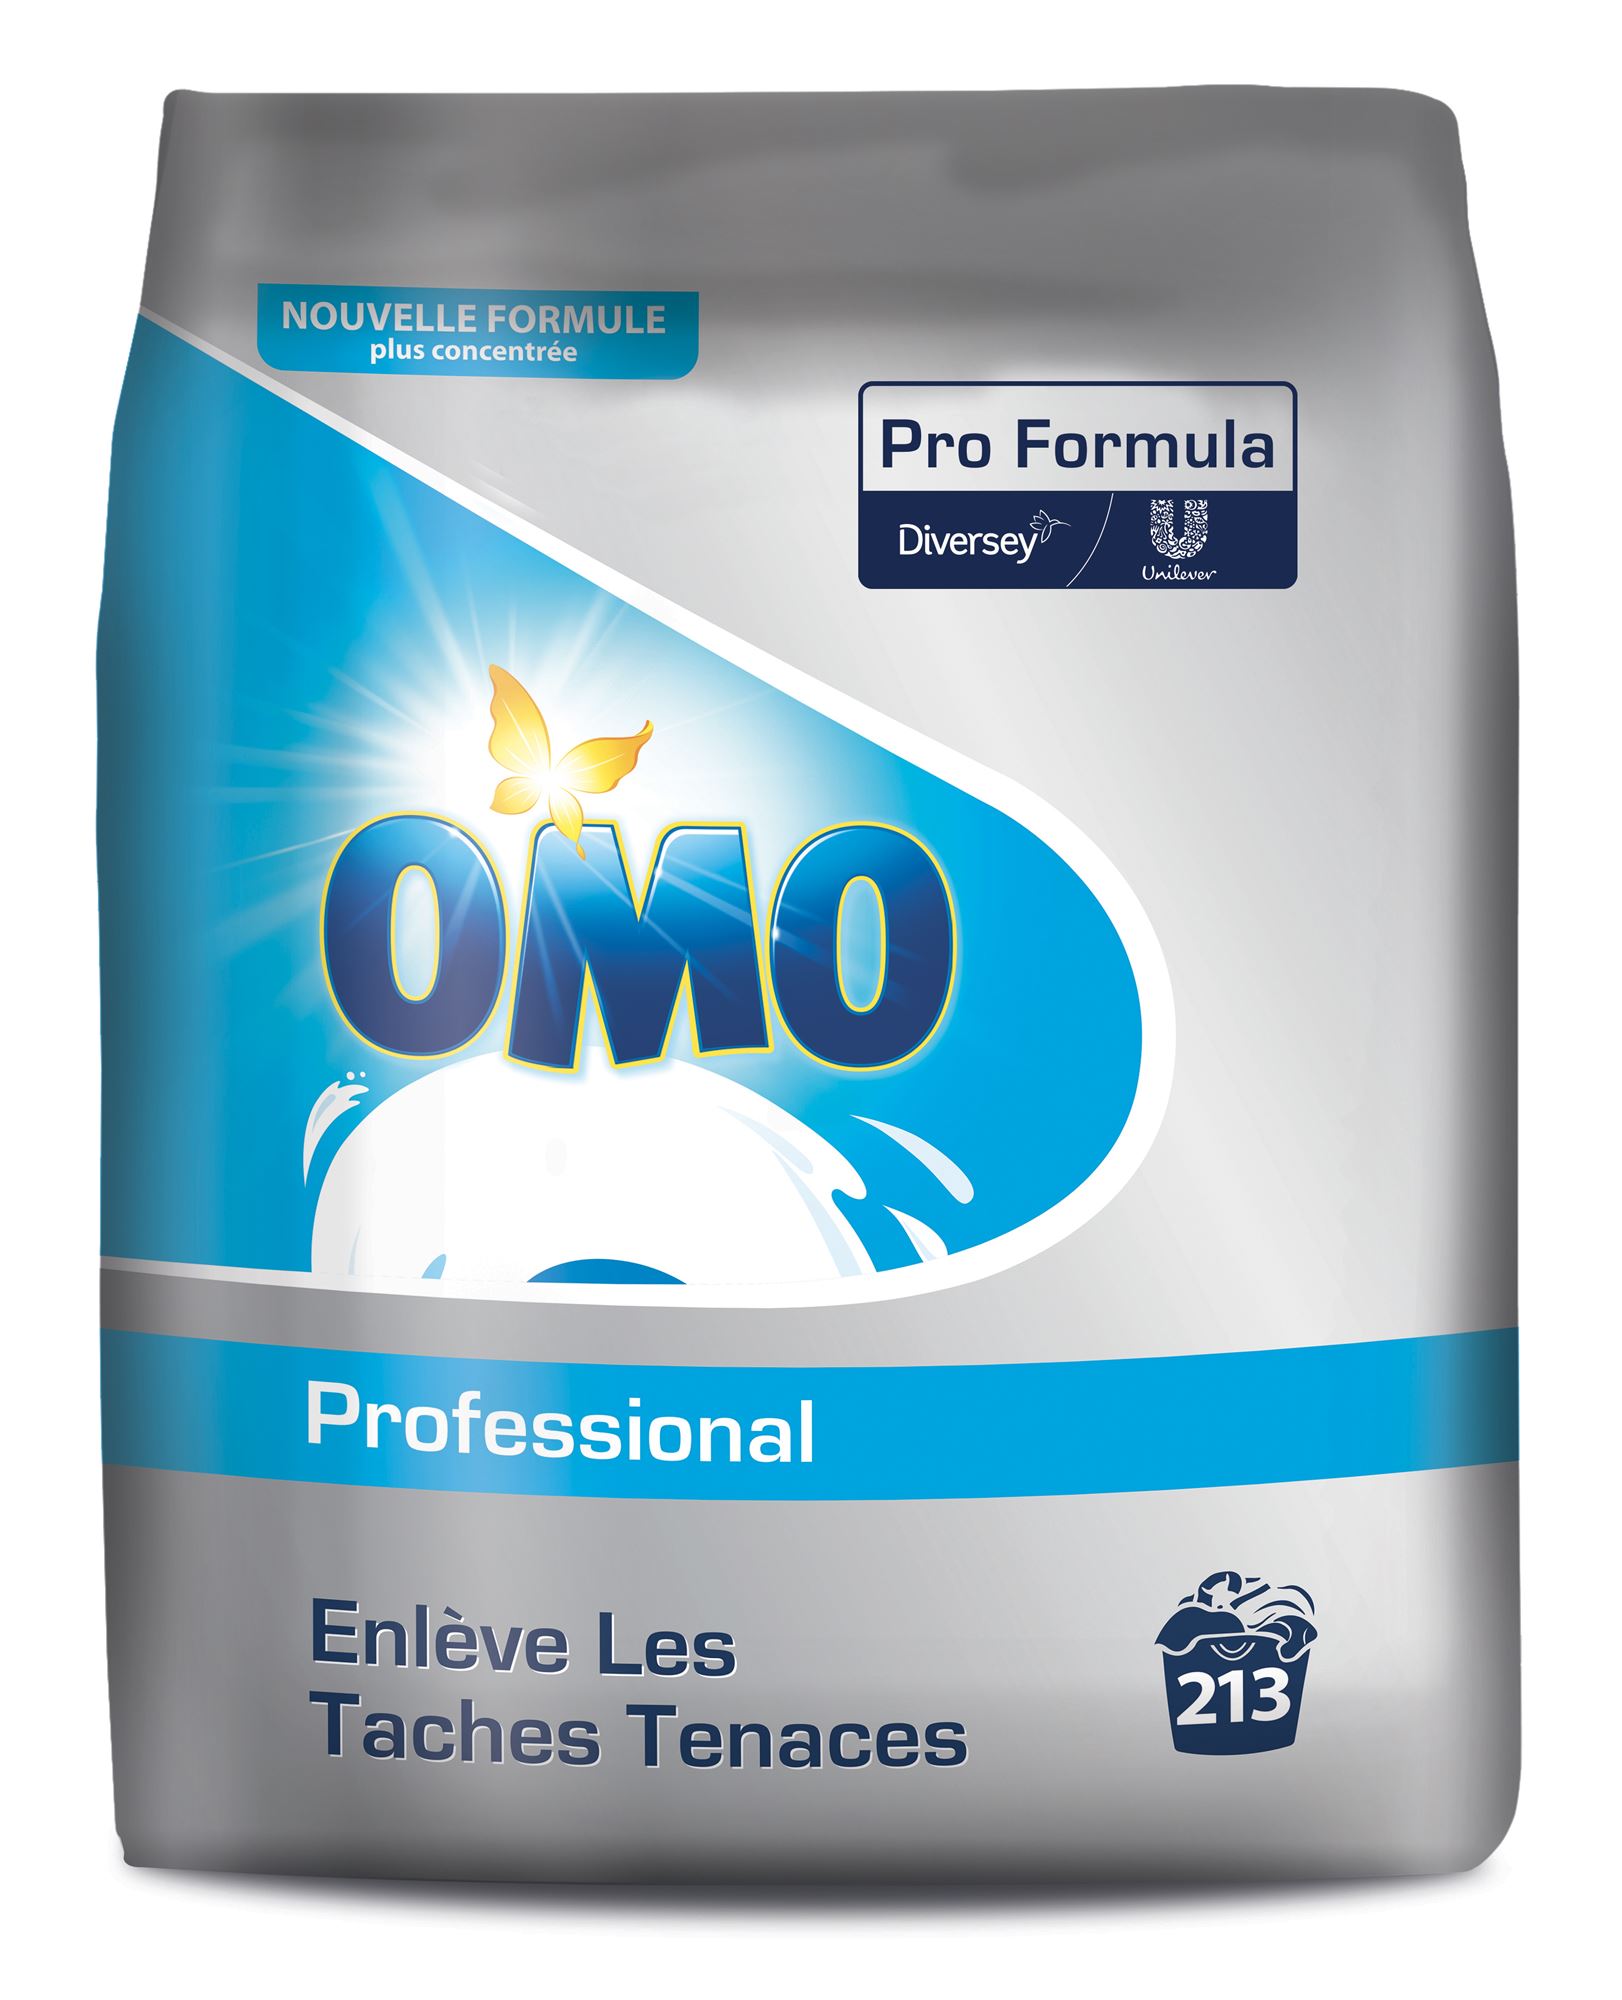 Lessive en poudre Omo Professional 106 lavages - Lessive en poudre